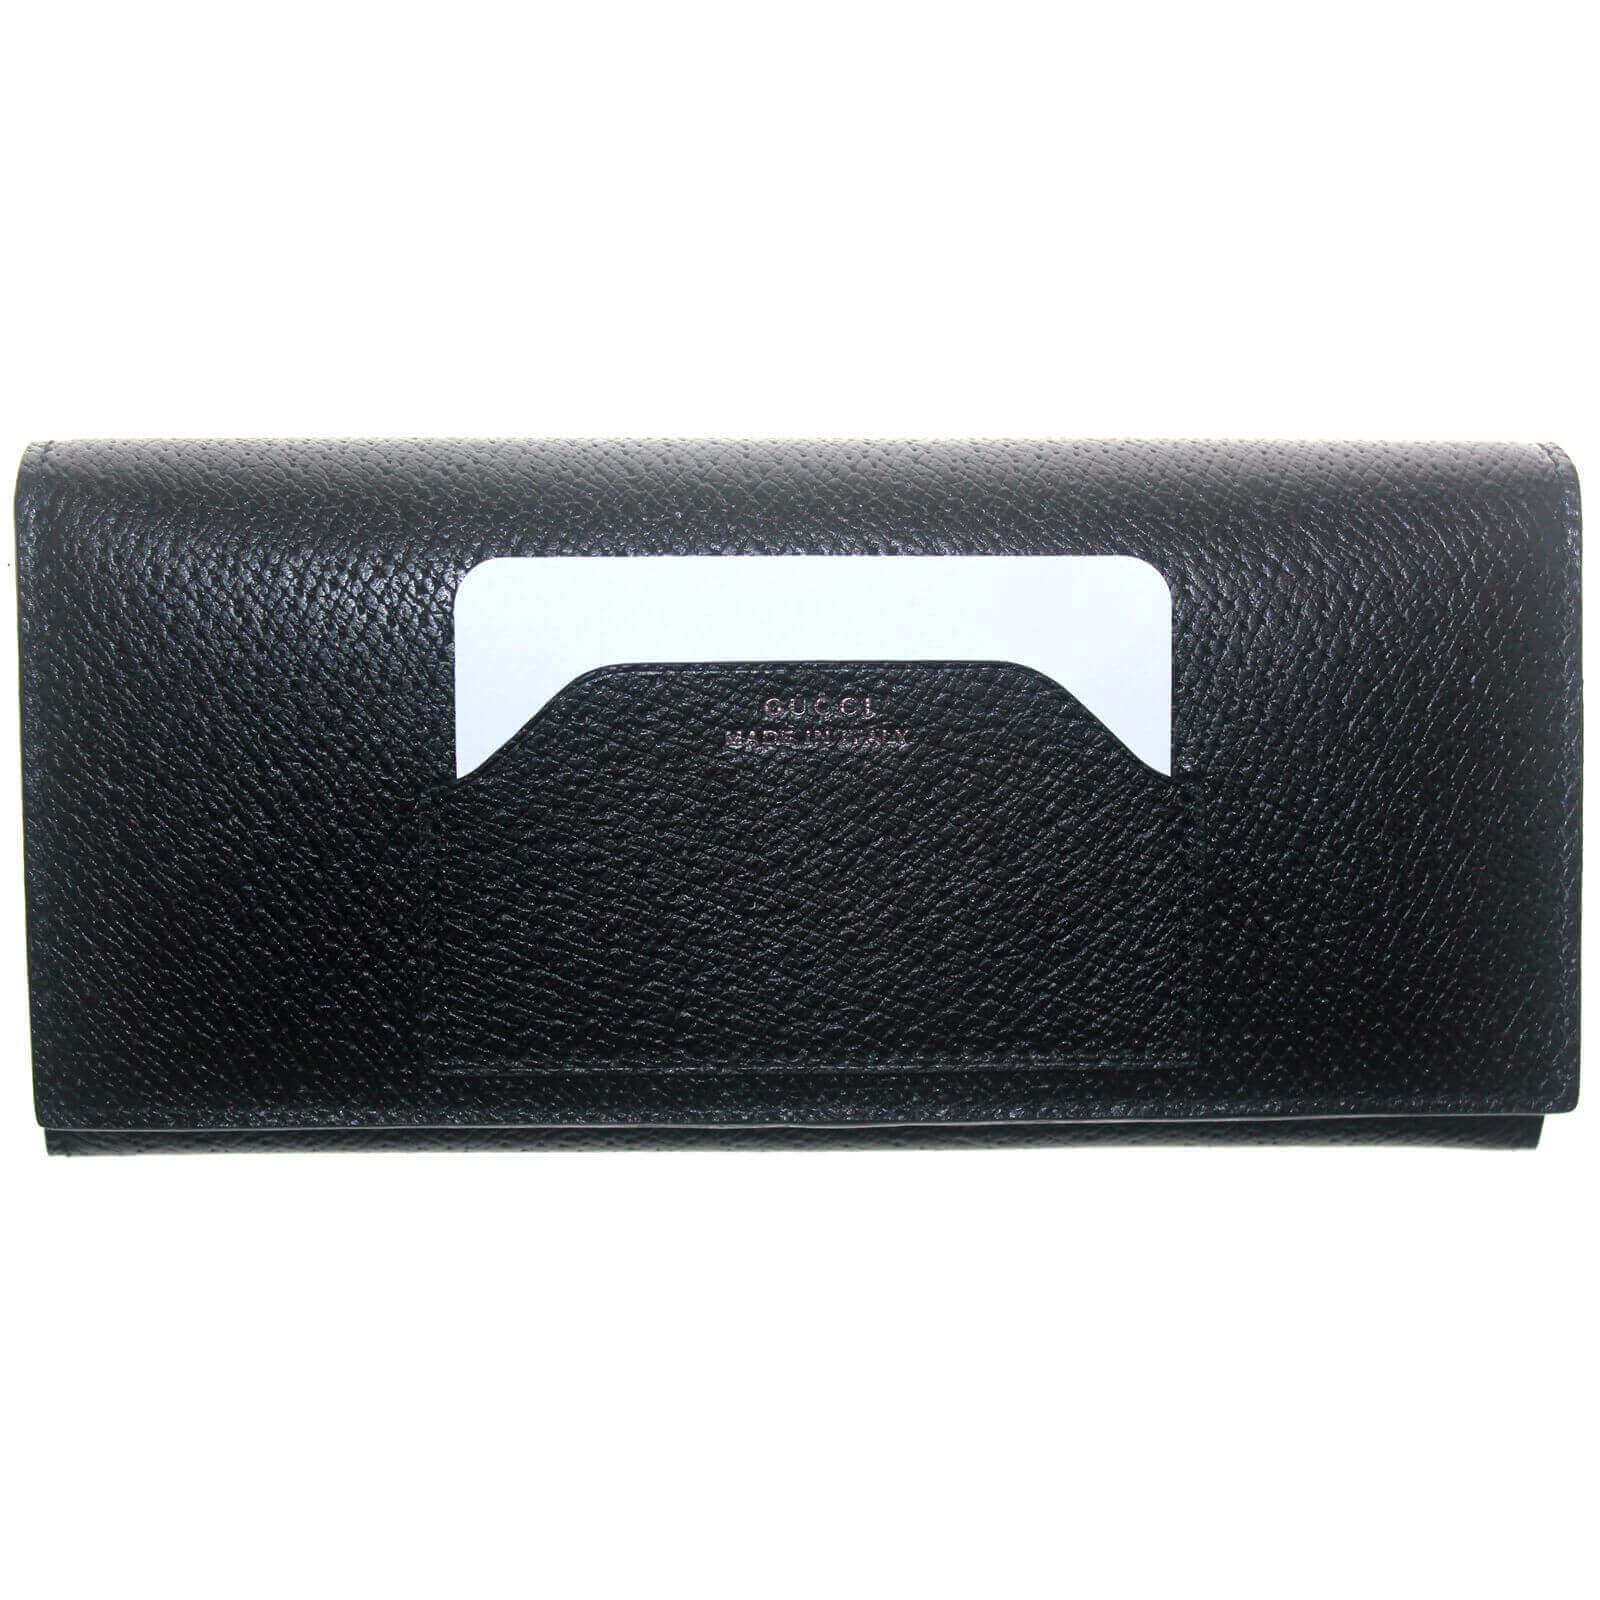 Gucci Black Calfskin Leather Envelope Pocket Card Holder Wallet